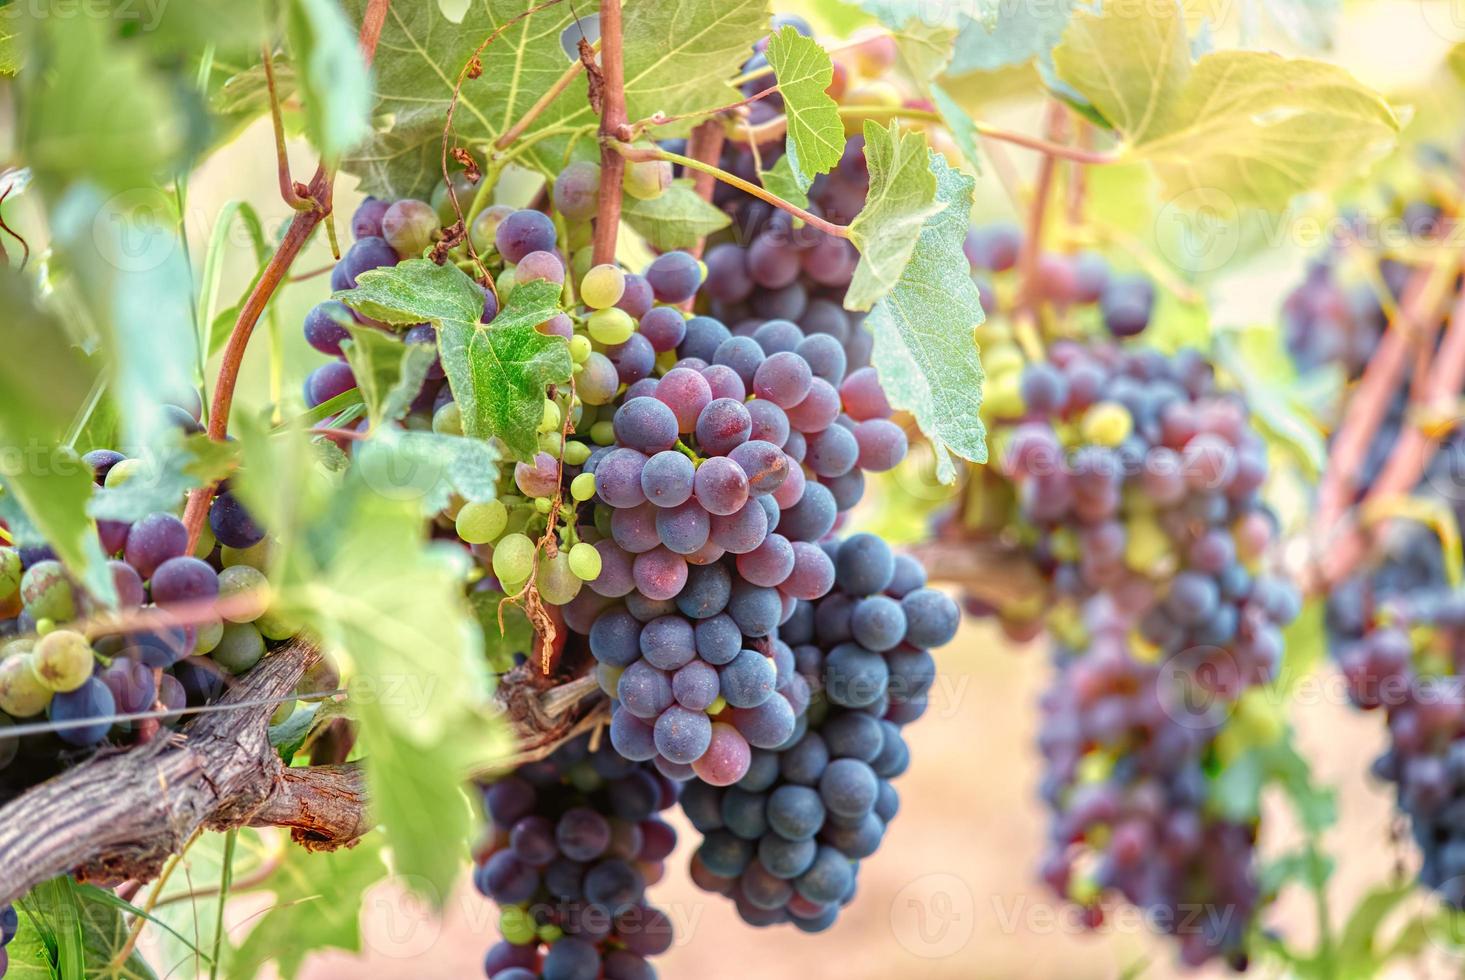 grappoli d'uva quasi maturi, regione delle langhe, italia. foto